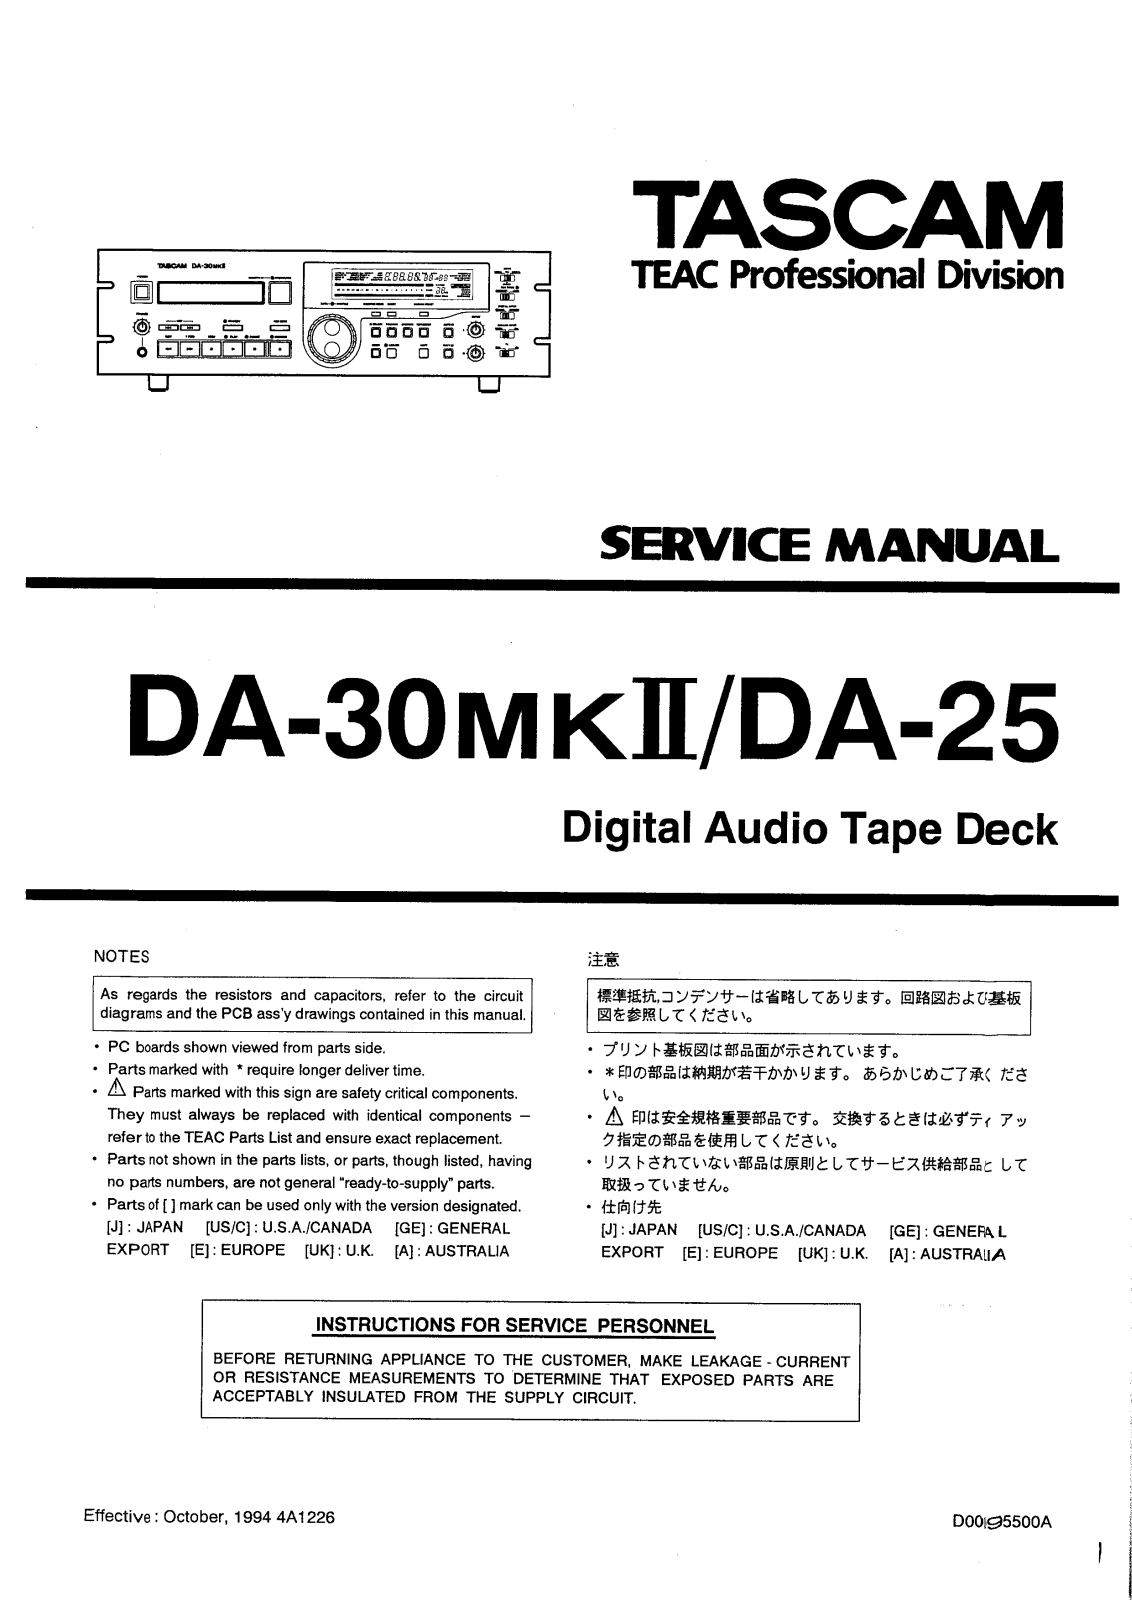 Tascam DA-30MKII, DA-25 User Manual